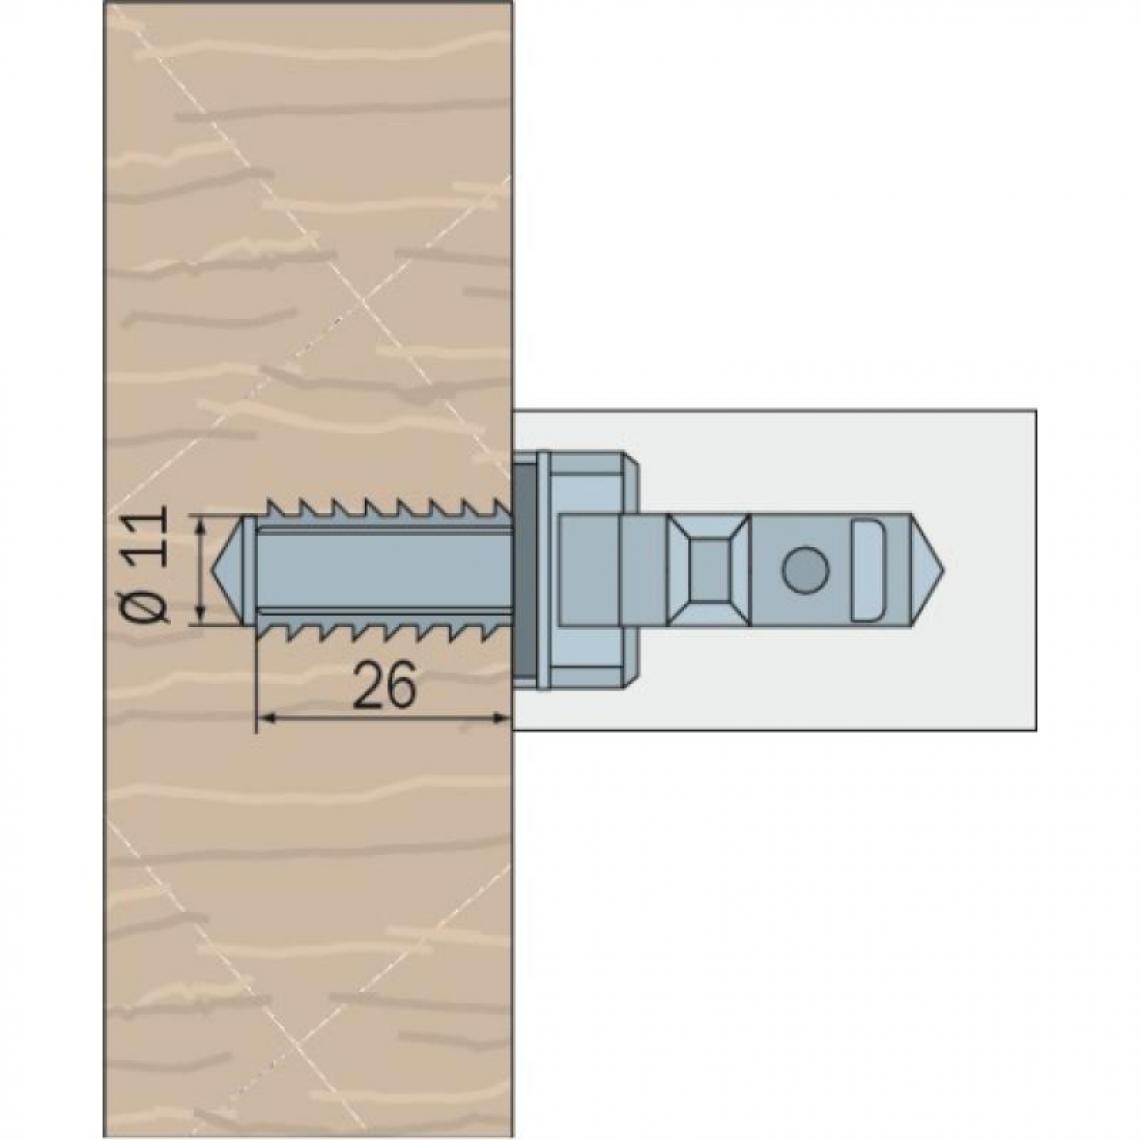 Normbau - Fixations pour poignées série STG inox et nylon Ø 26, 32, 34 et 40 mm - pour montage droit - Poignée de porte